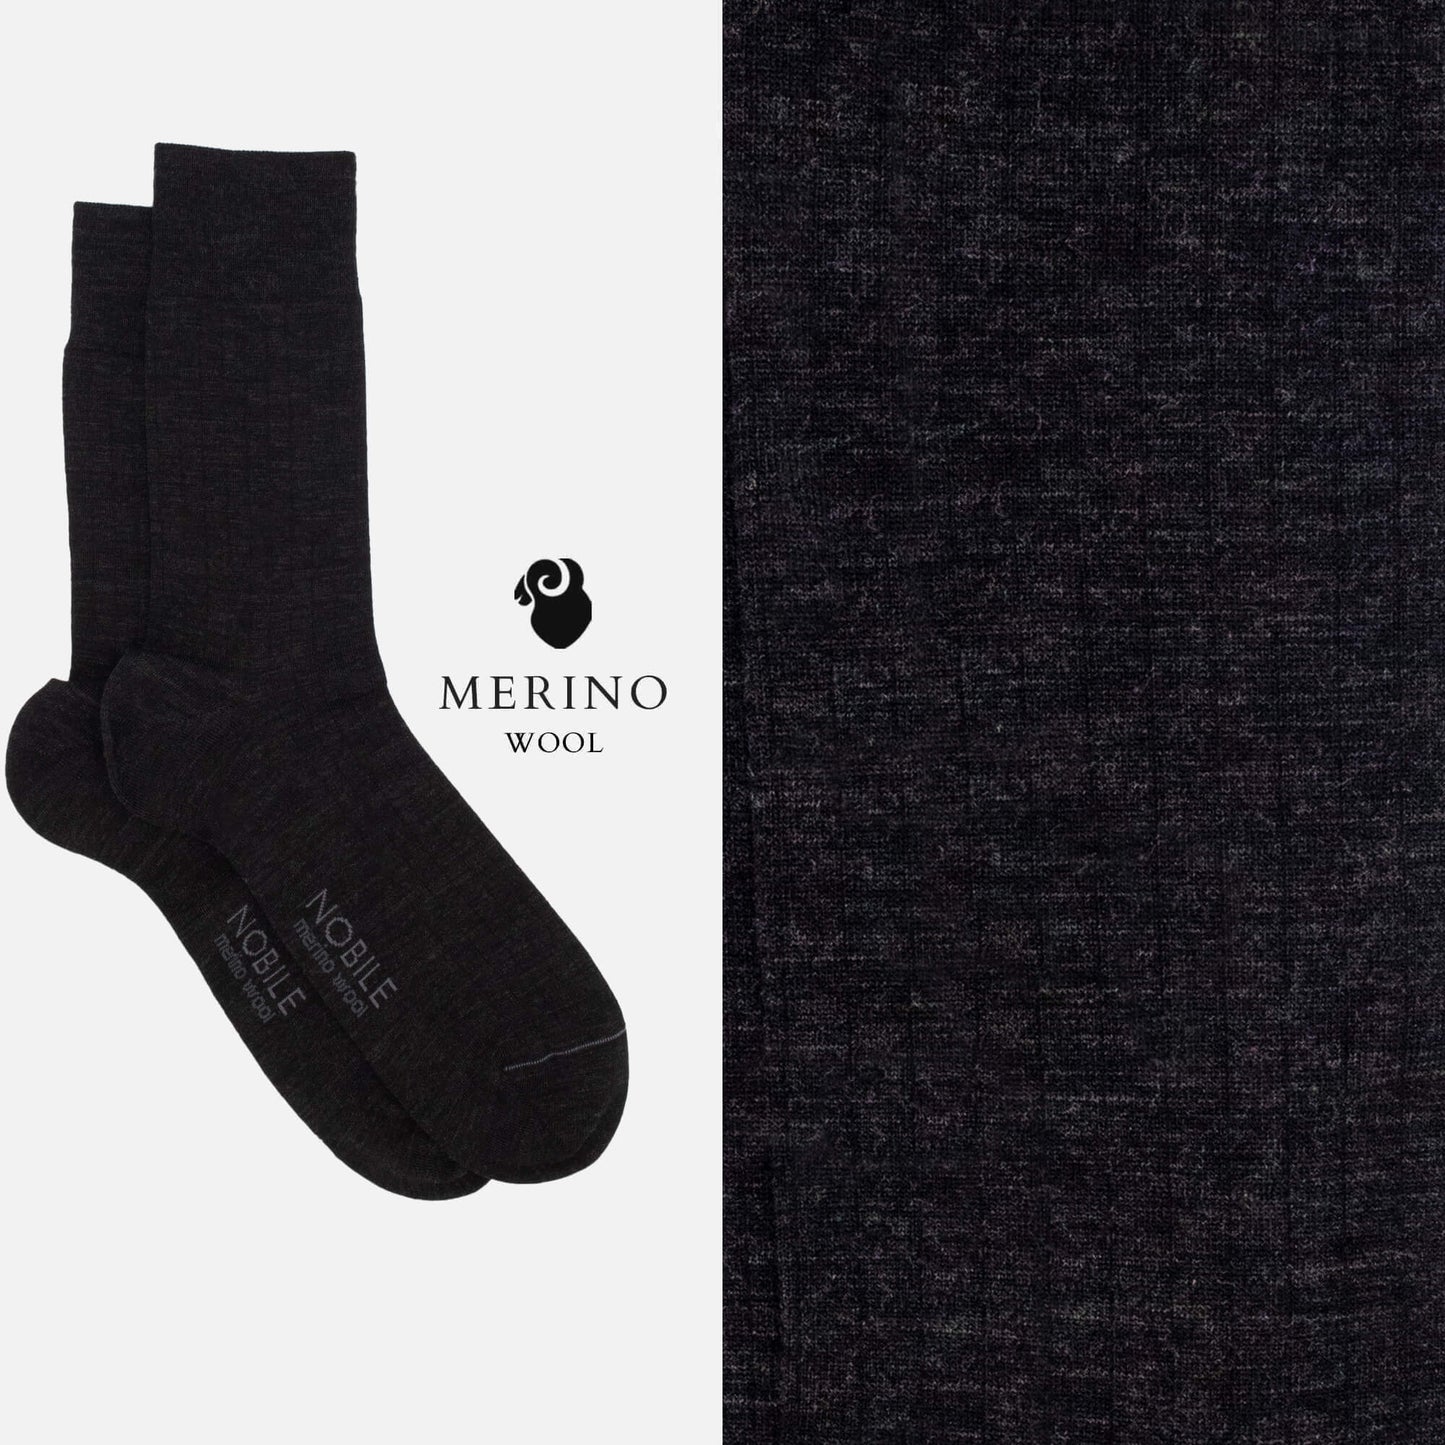 Northen Ribs - Box of 6 crew socks in Merino wool with micro ribs